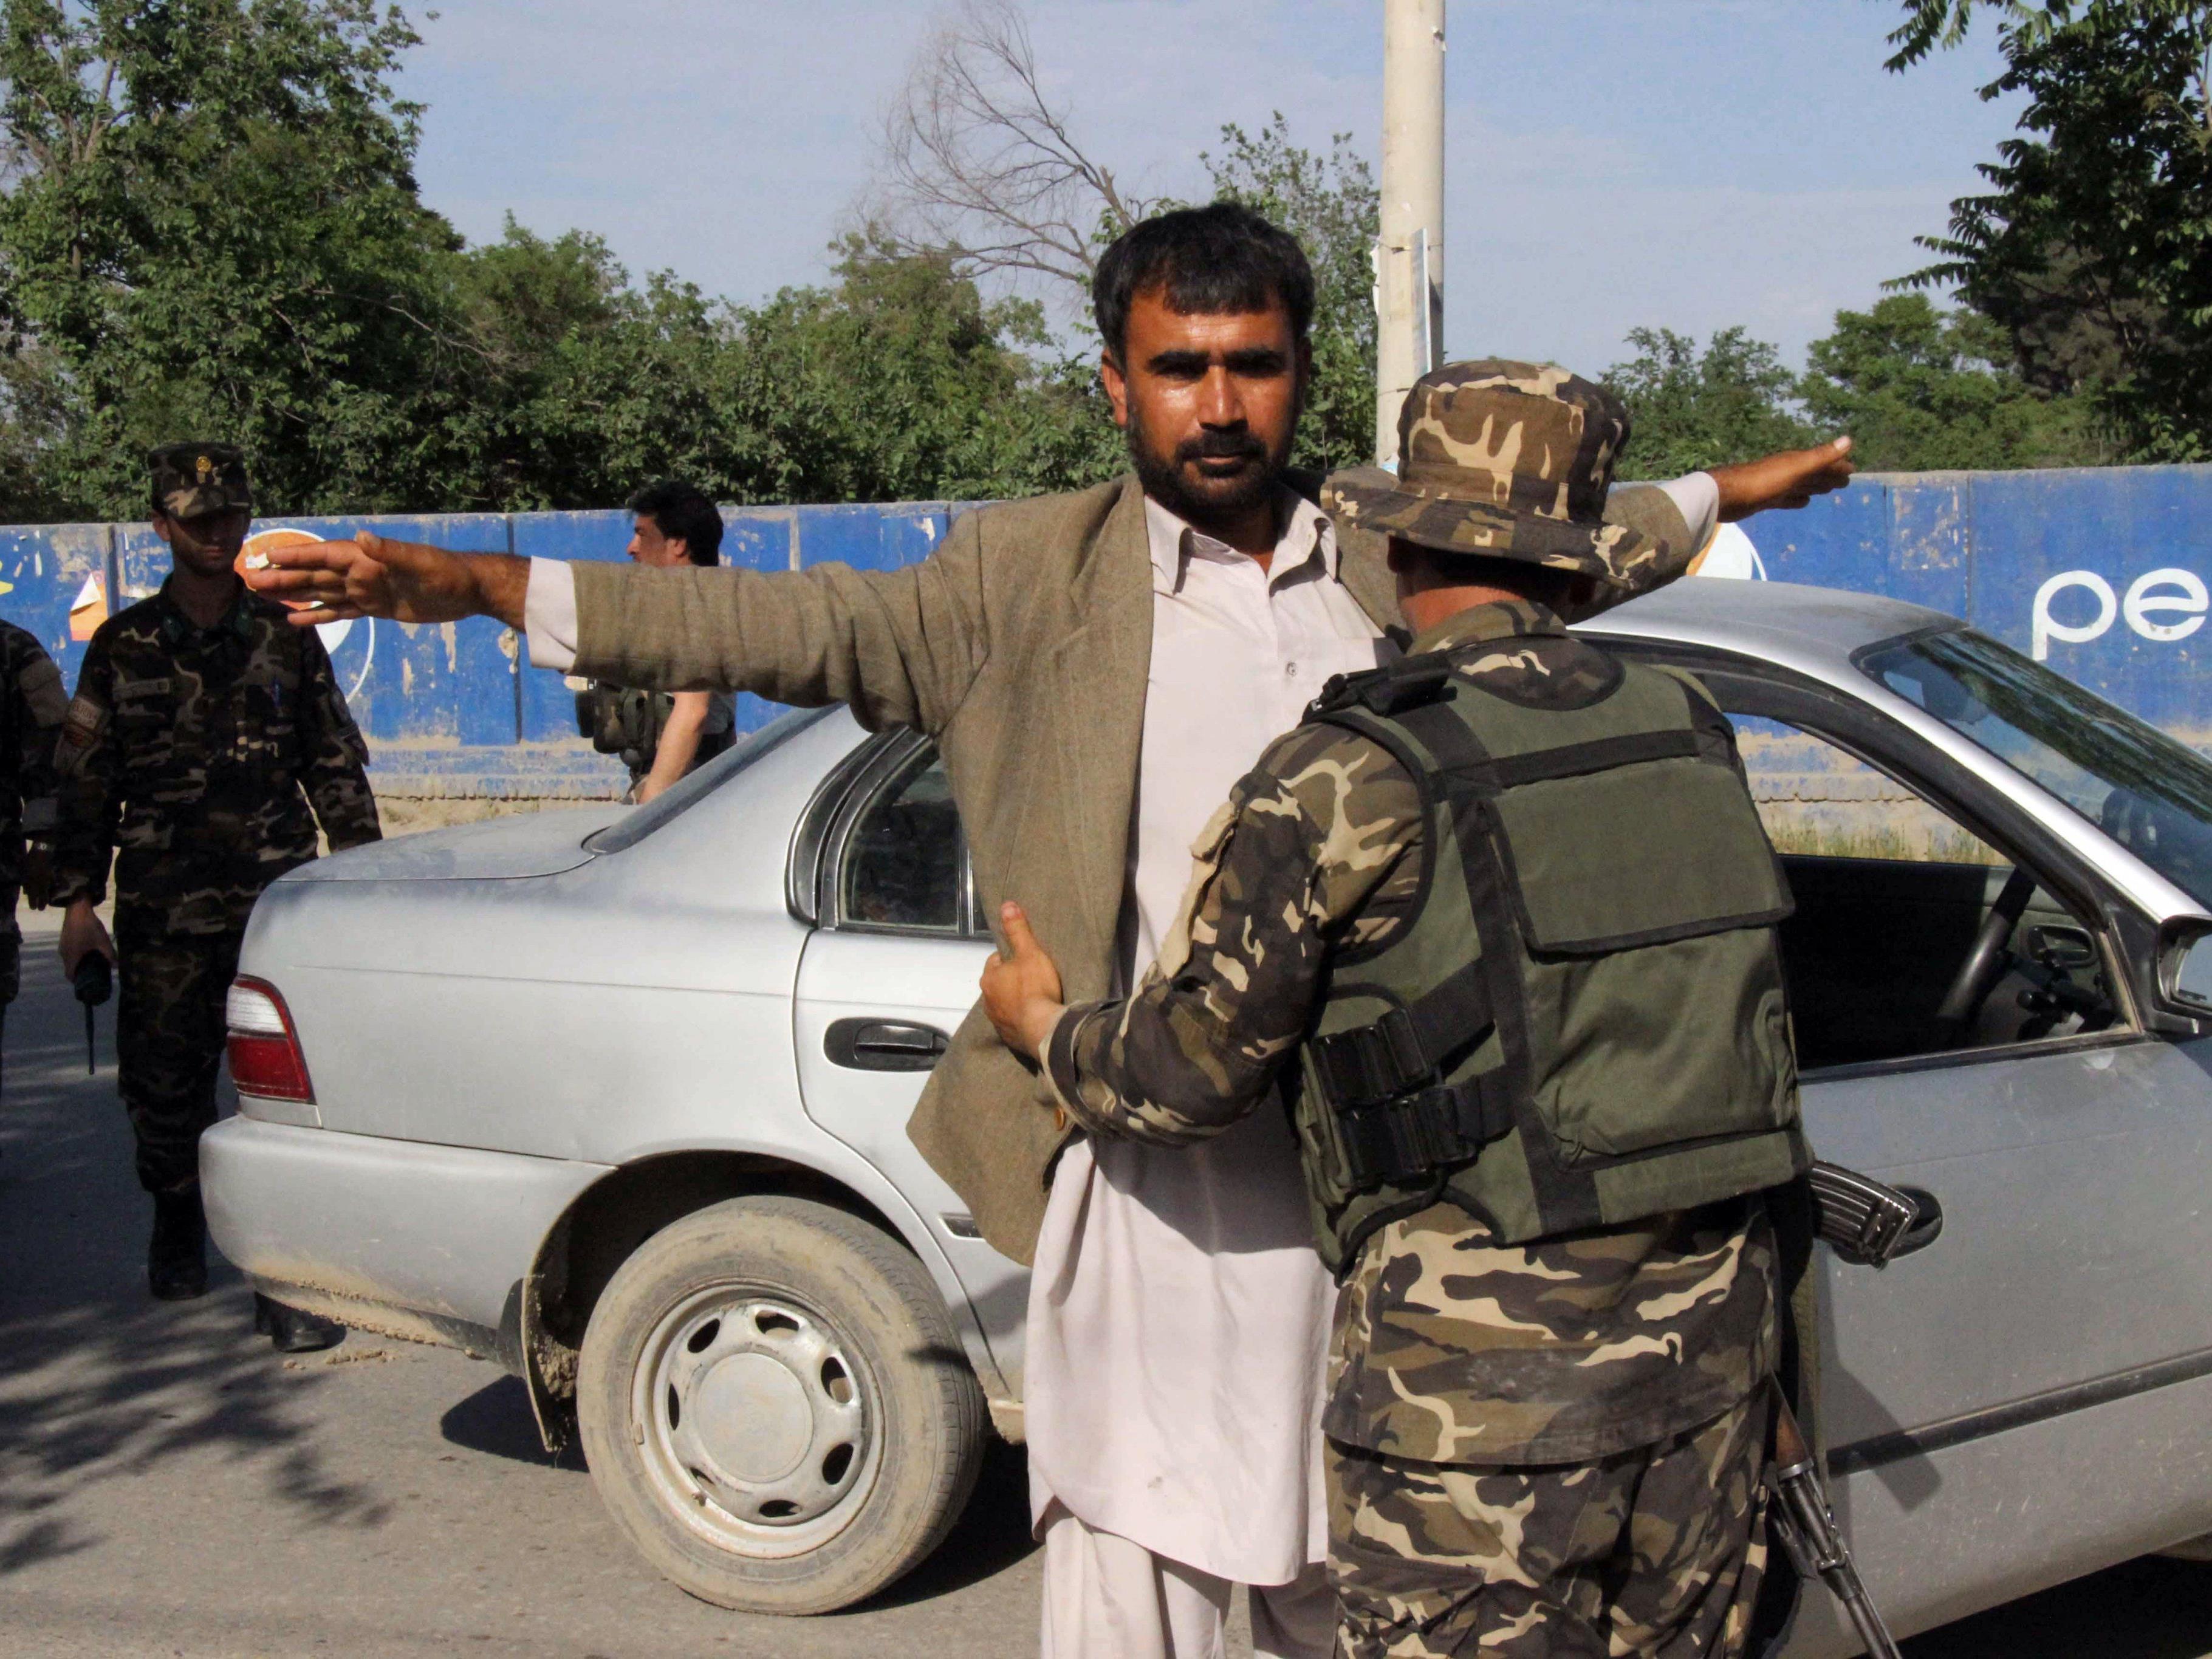 Afghanische Sicherheitskräfte kontrollieren Pendler an einem Checkpoint in Kunduz